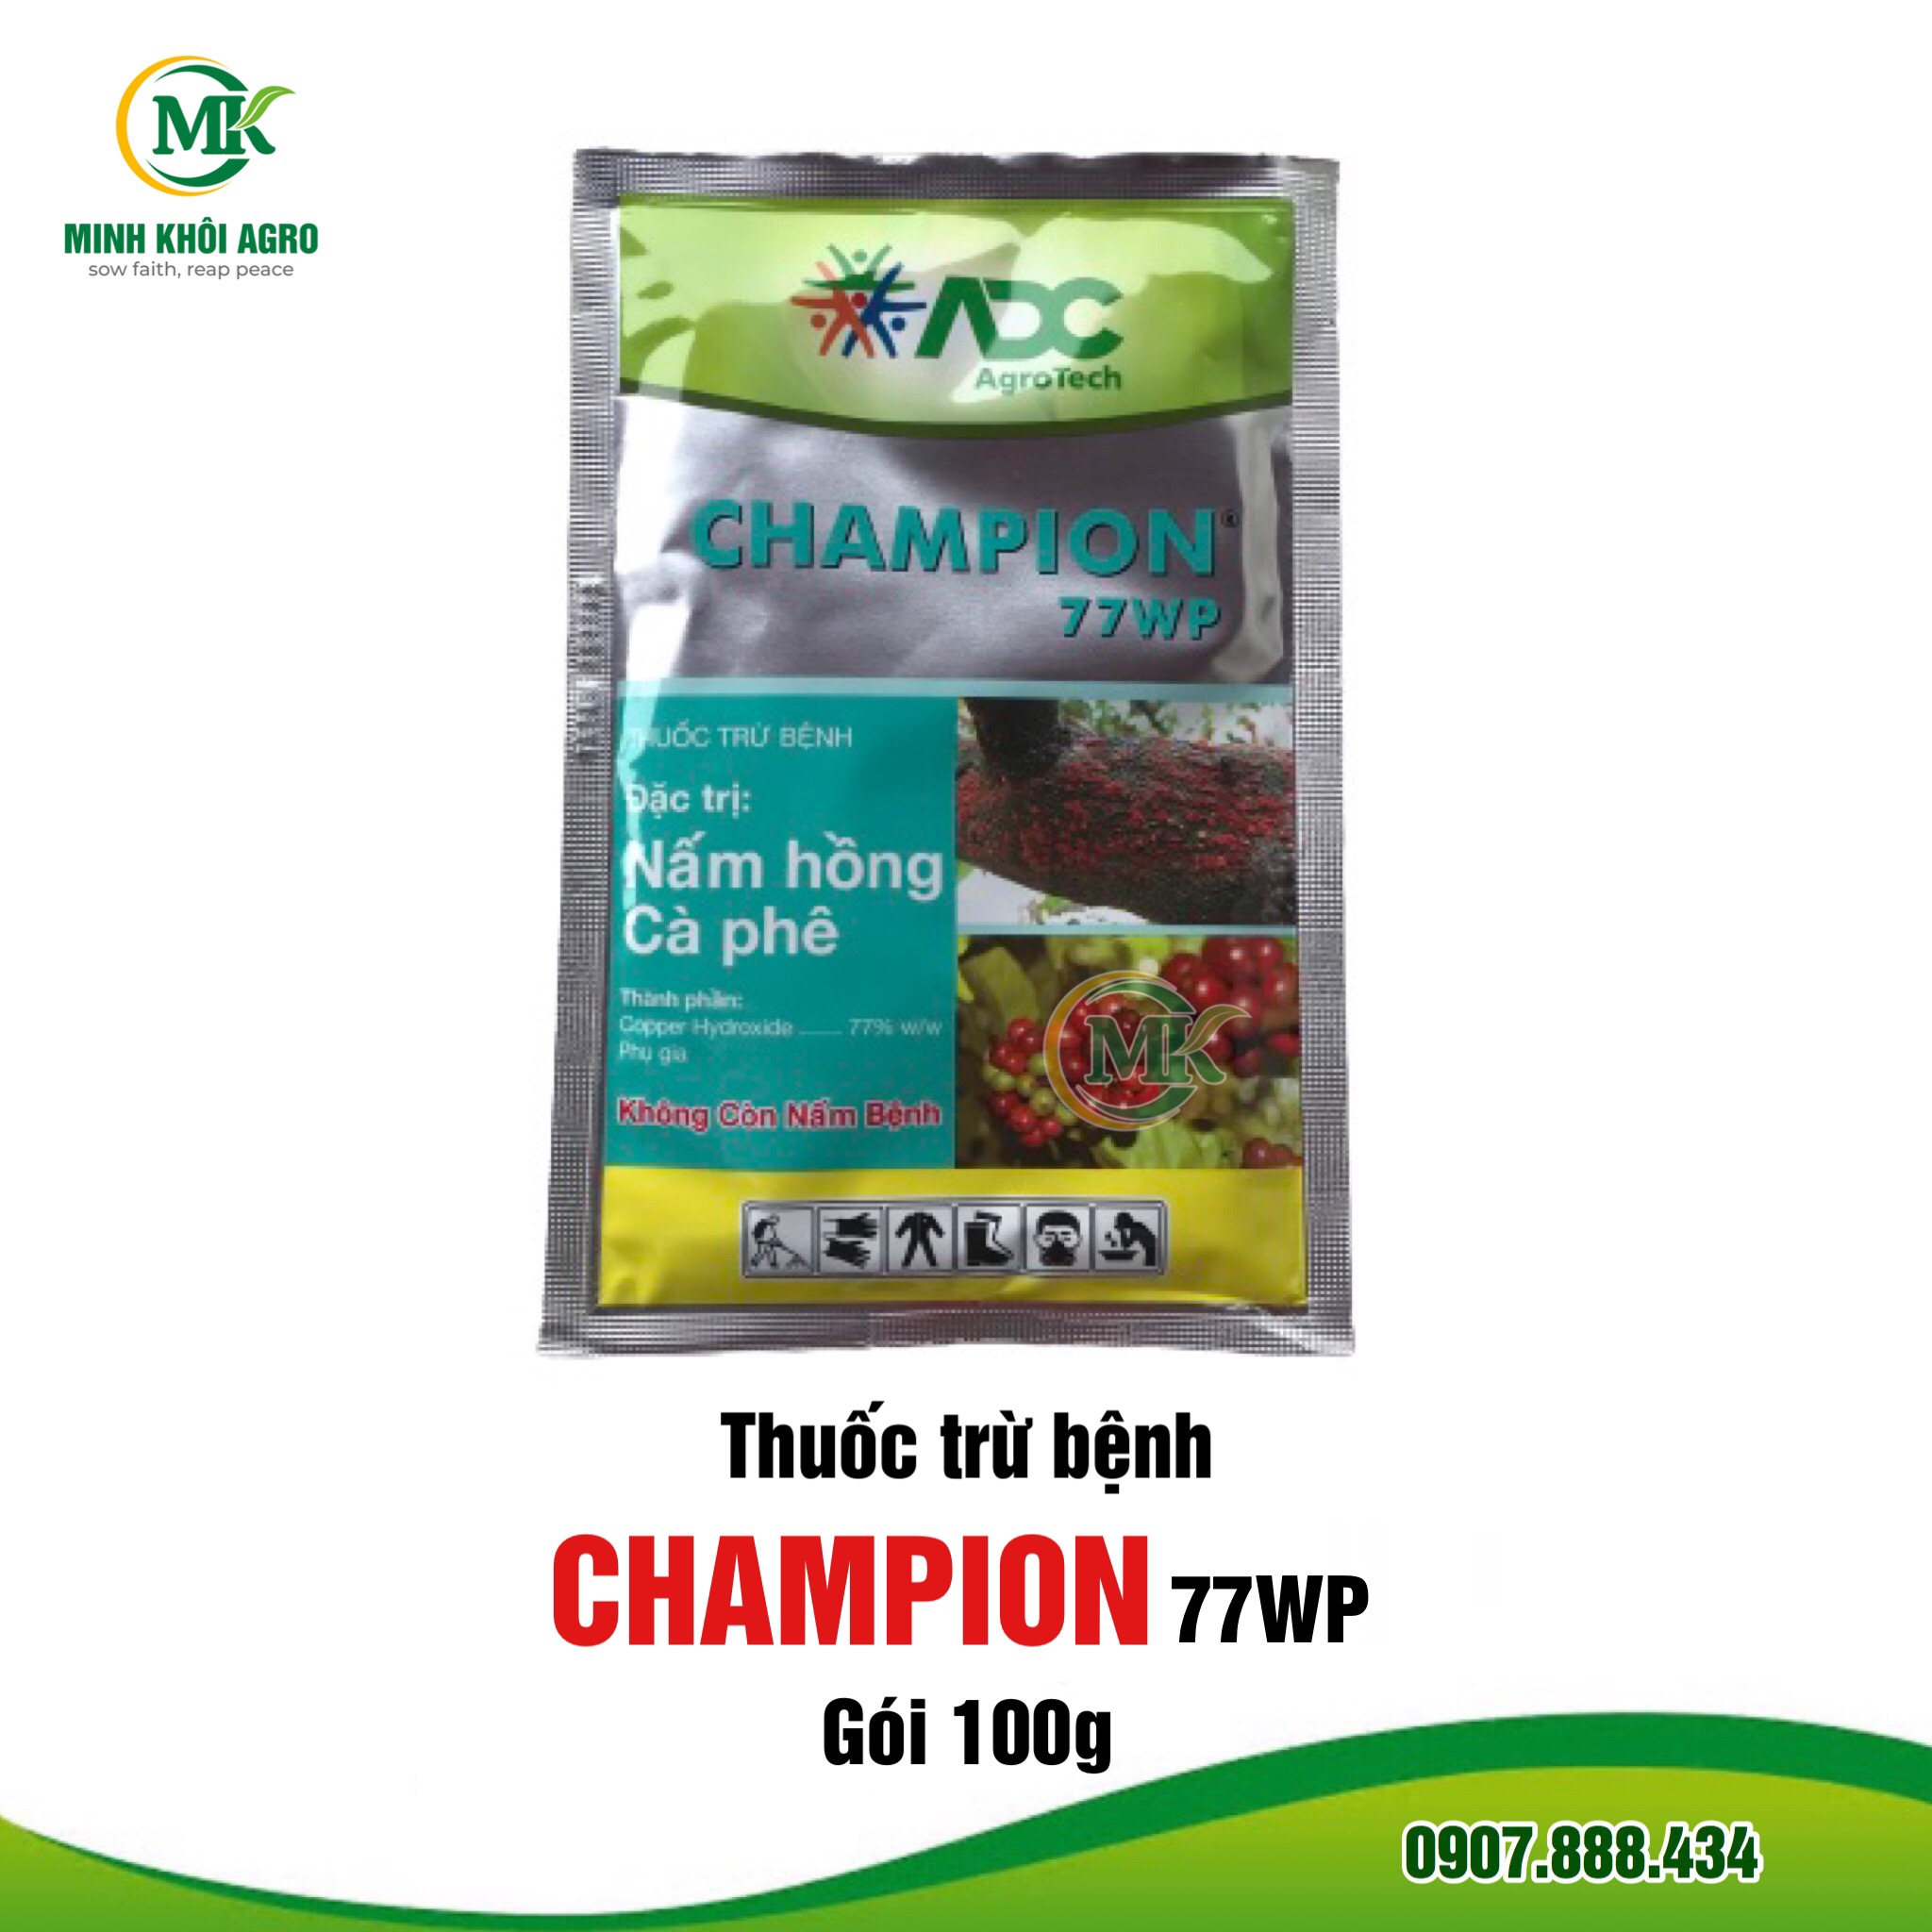 Thuốc trừ bệnh Champion 77WP - Gói 100g